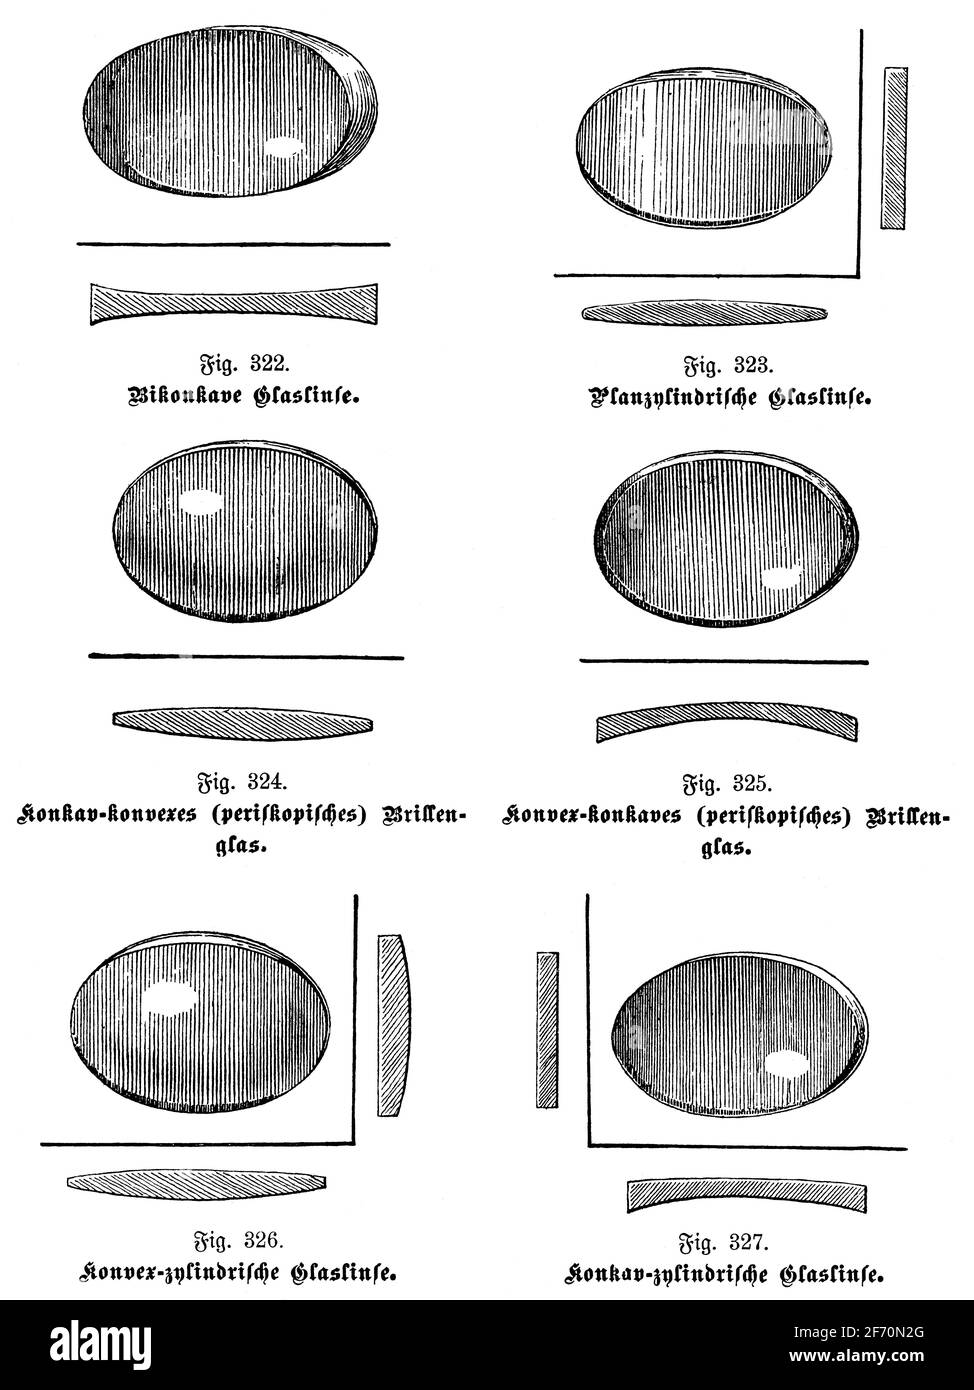 Différents types de lentilles optiques pour lunettes. Illustration du 19e siècle. Allemagne. Arrière-plan blanc. Banque D'Images